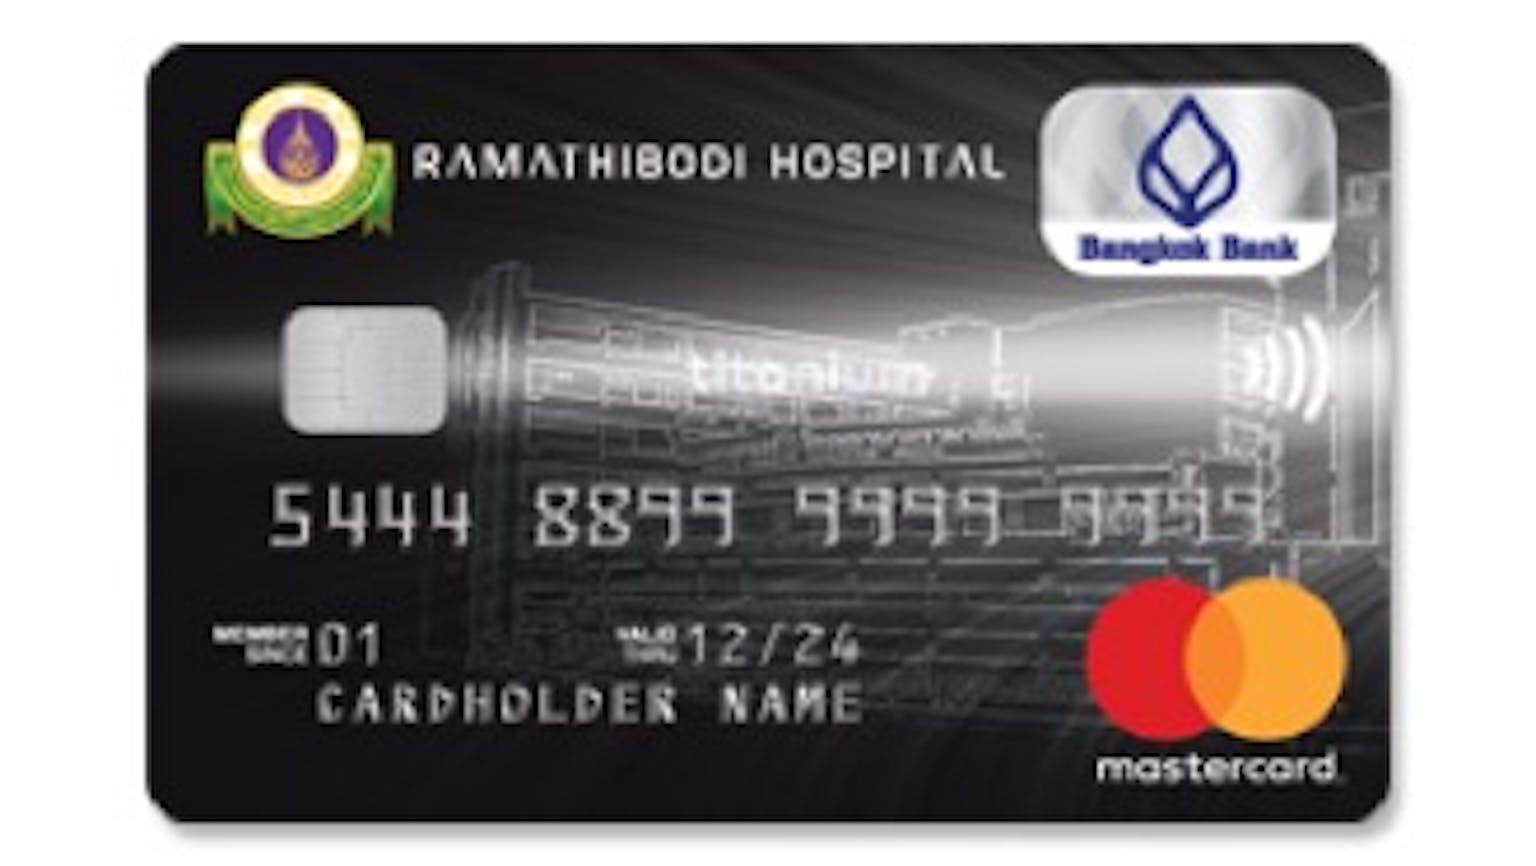 บัตรเครดิตไทเทเนี่ยม โรงพยาบาลรามาธิบดี ธนาคารกรุงเทพ